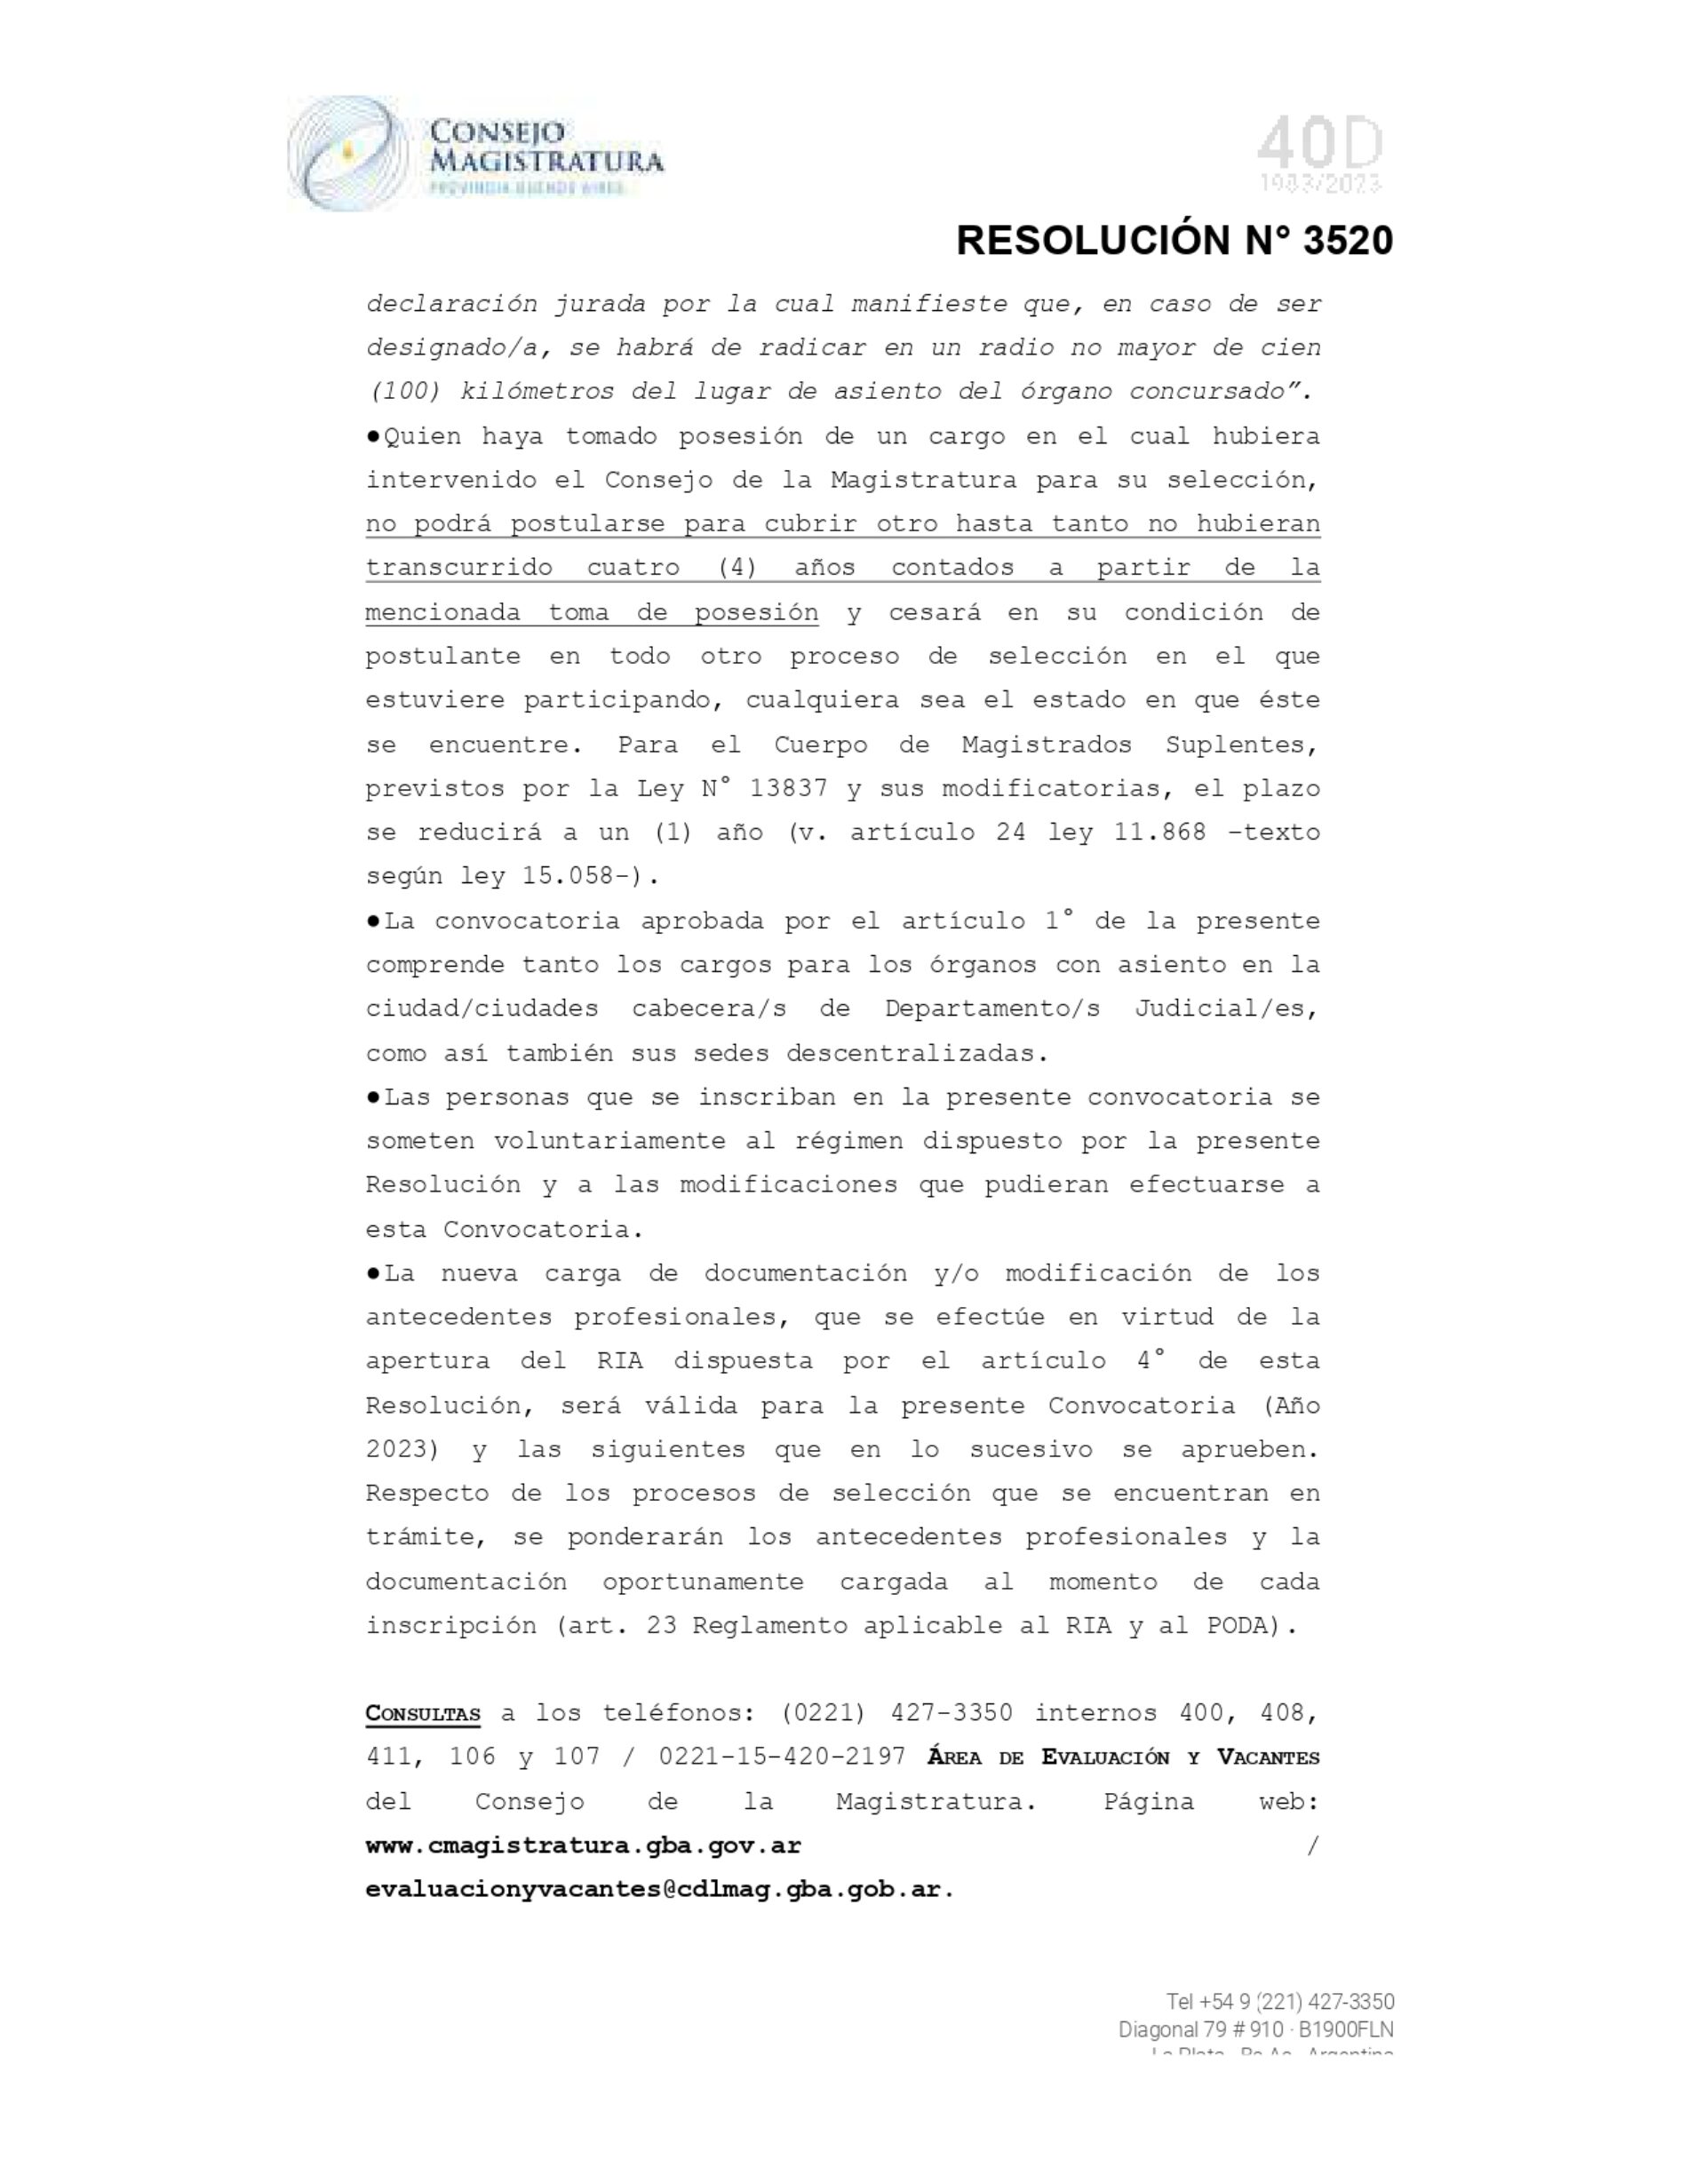 Fundejus difunde: “Resolución 3520 del 19/12/2023 “